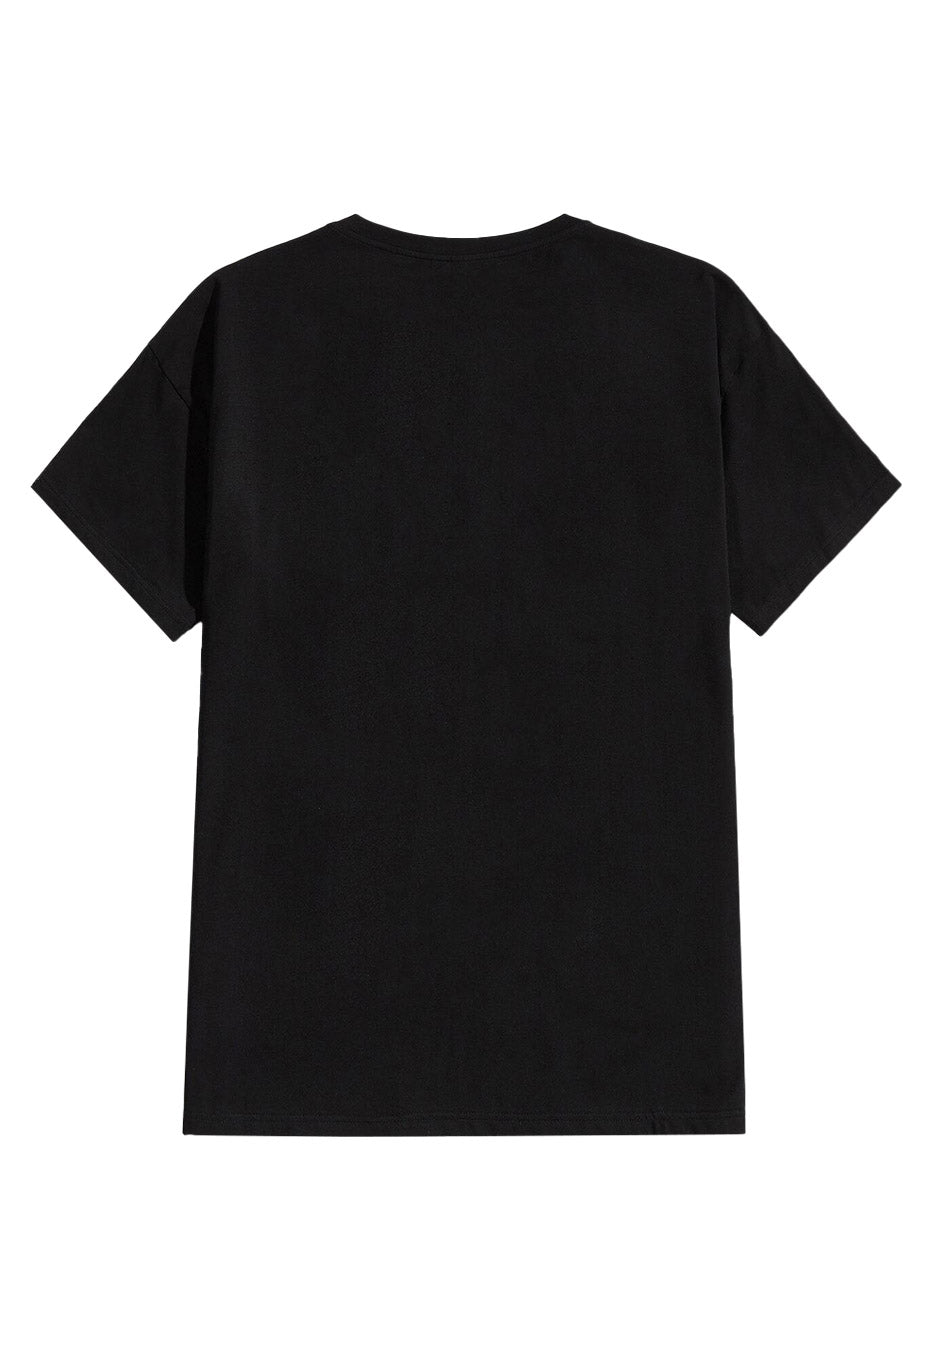 Darkthrone - Logo - T-Shirt | Neutral-Image